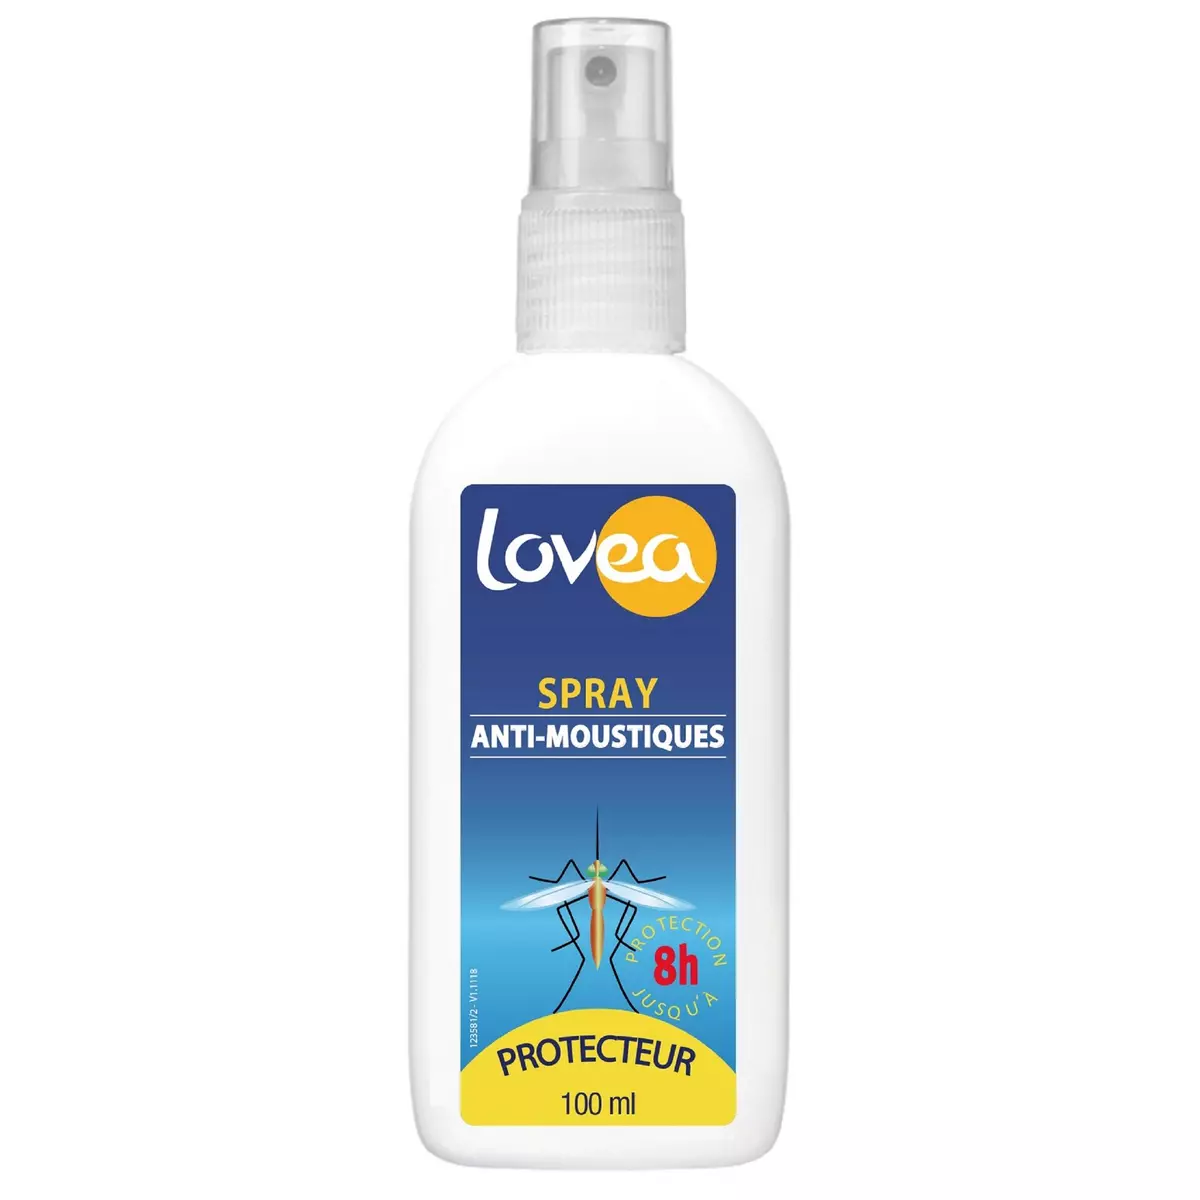 LOVEA Spray anti-moustiques protecteur 8h 100ml